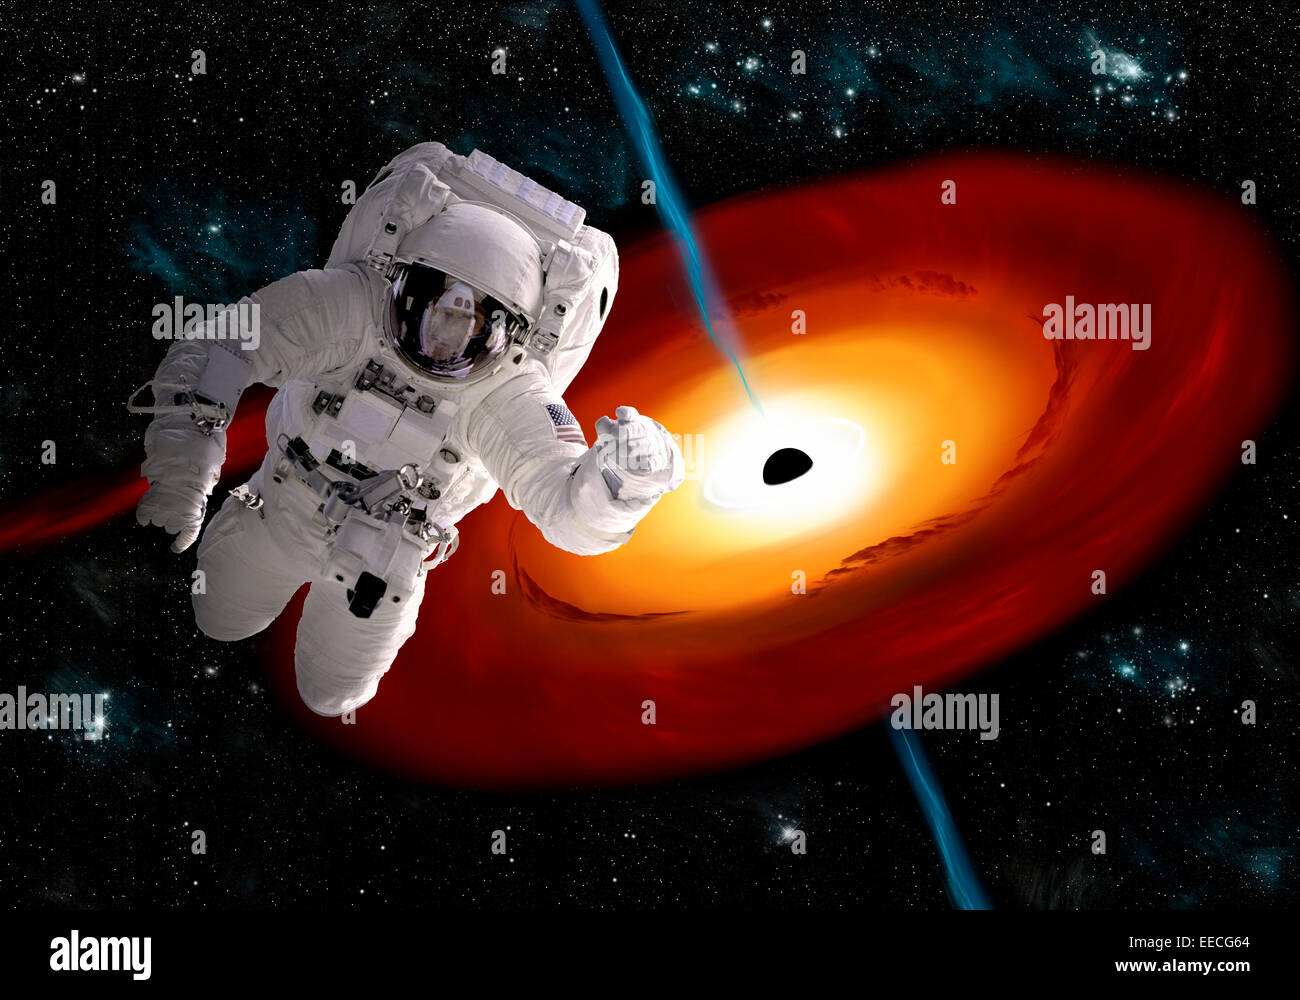 Concept de l'artiste d'un astronaute flottant dans l'espace, il est attiré par un trou noir massif. Les explosions de rayons gamma en éruption fr Banque D'Images